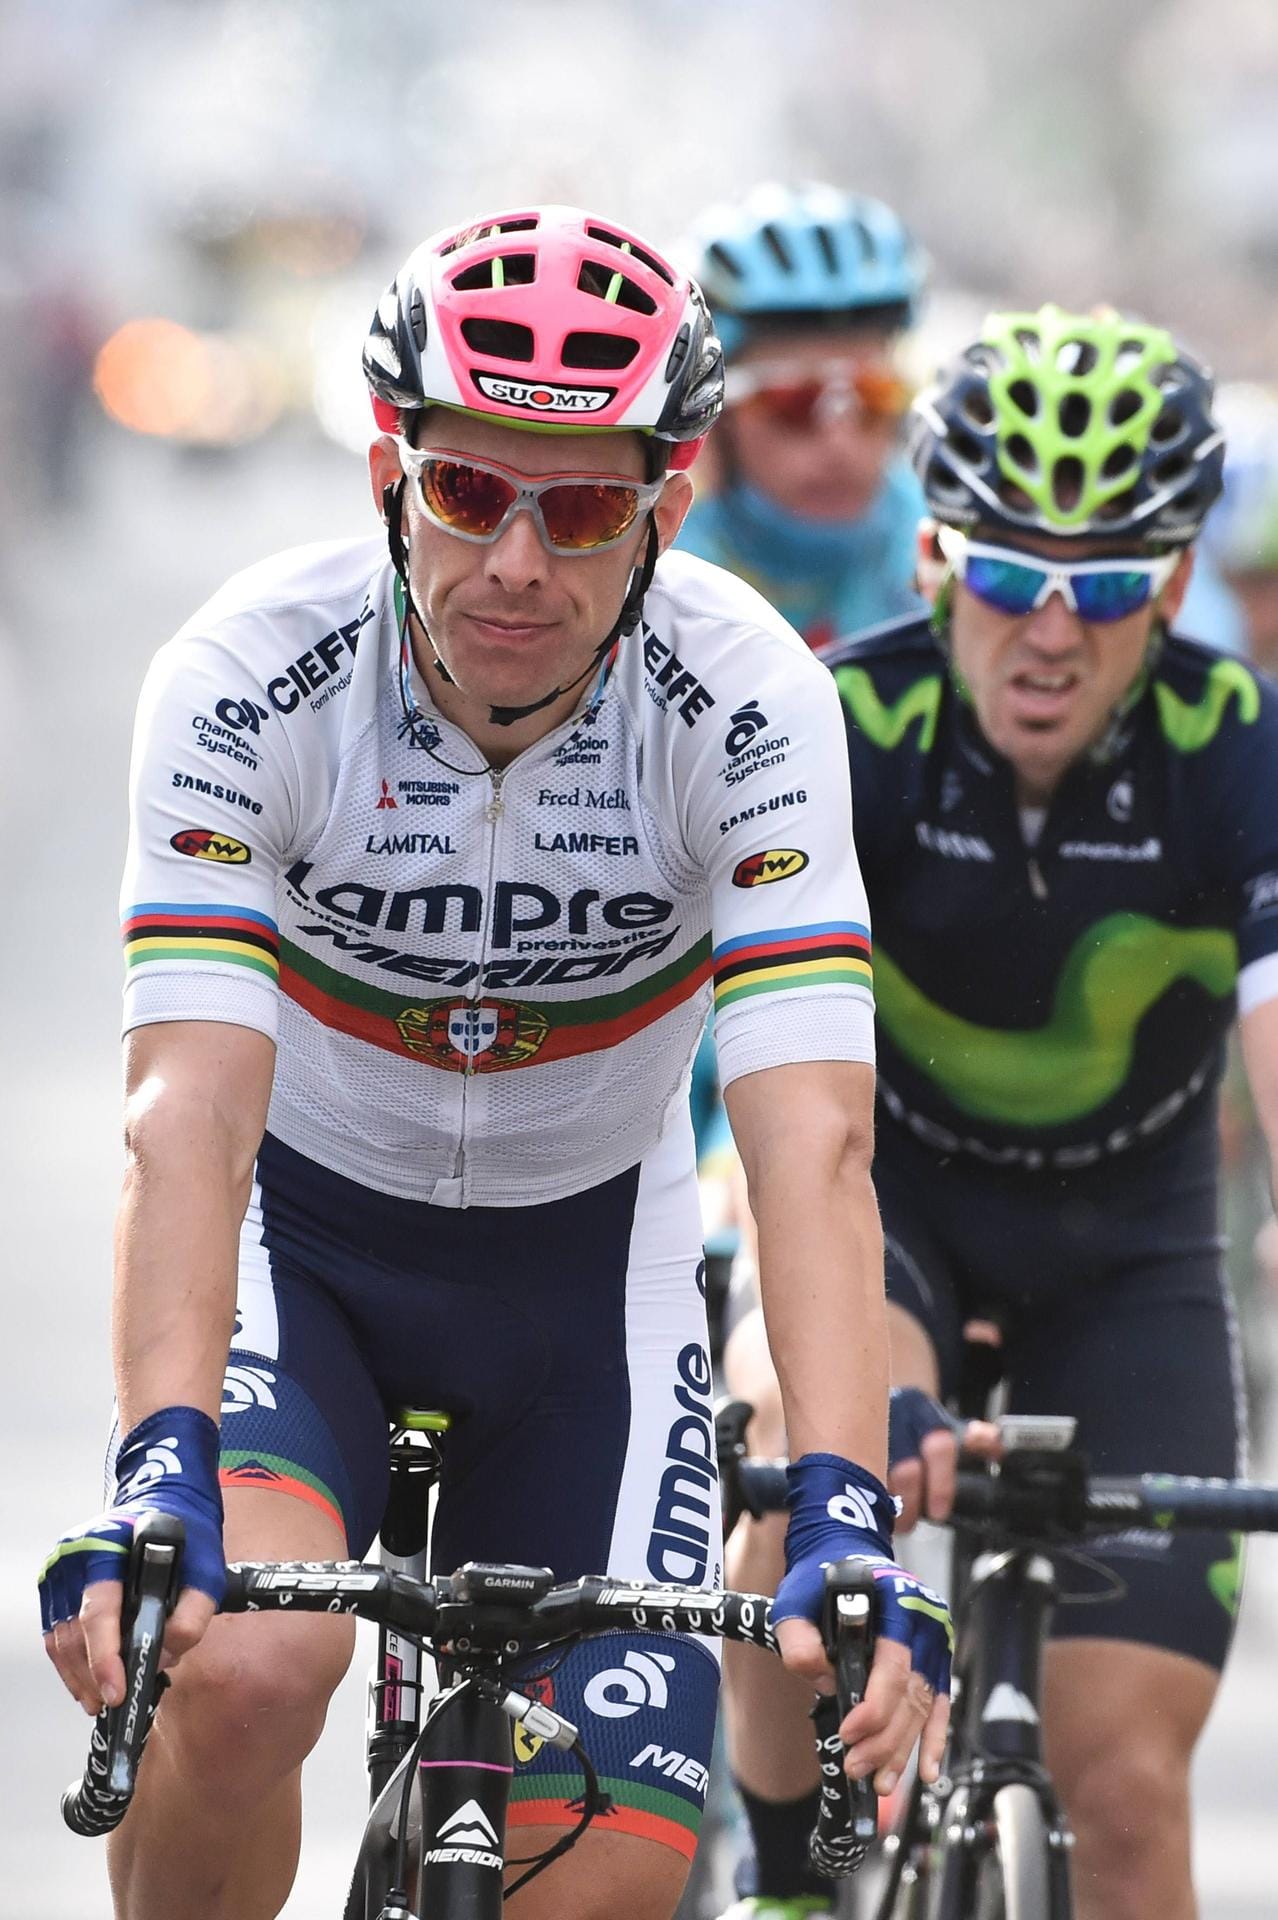 Altmeister aus Portugal: Weltmeister war Rui Costa schon, Sieger bei Rundfahren wie der Tour de Suisse ebenfalls. Kein Wunder, dass die italienische Mannschaft Lampre weiter auf den Portugiesen baut.